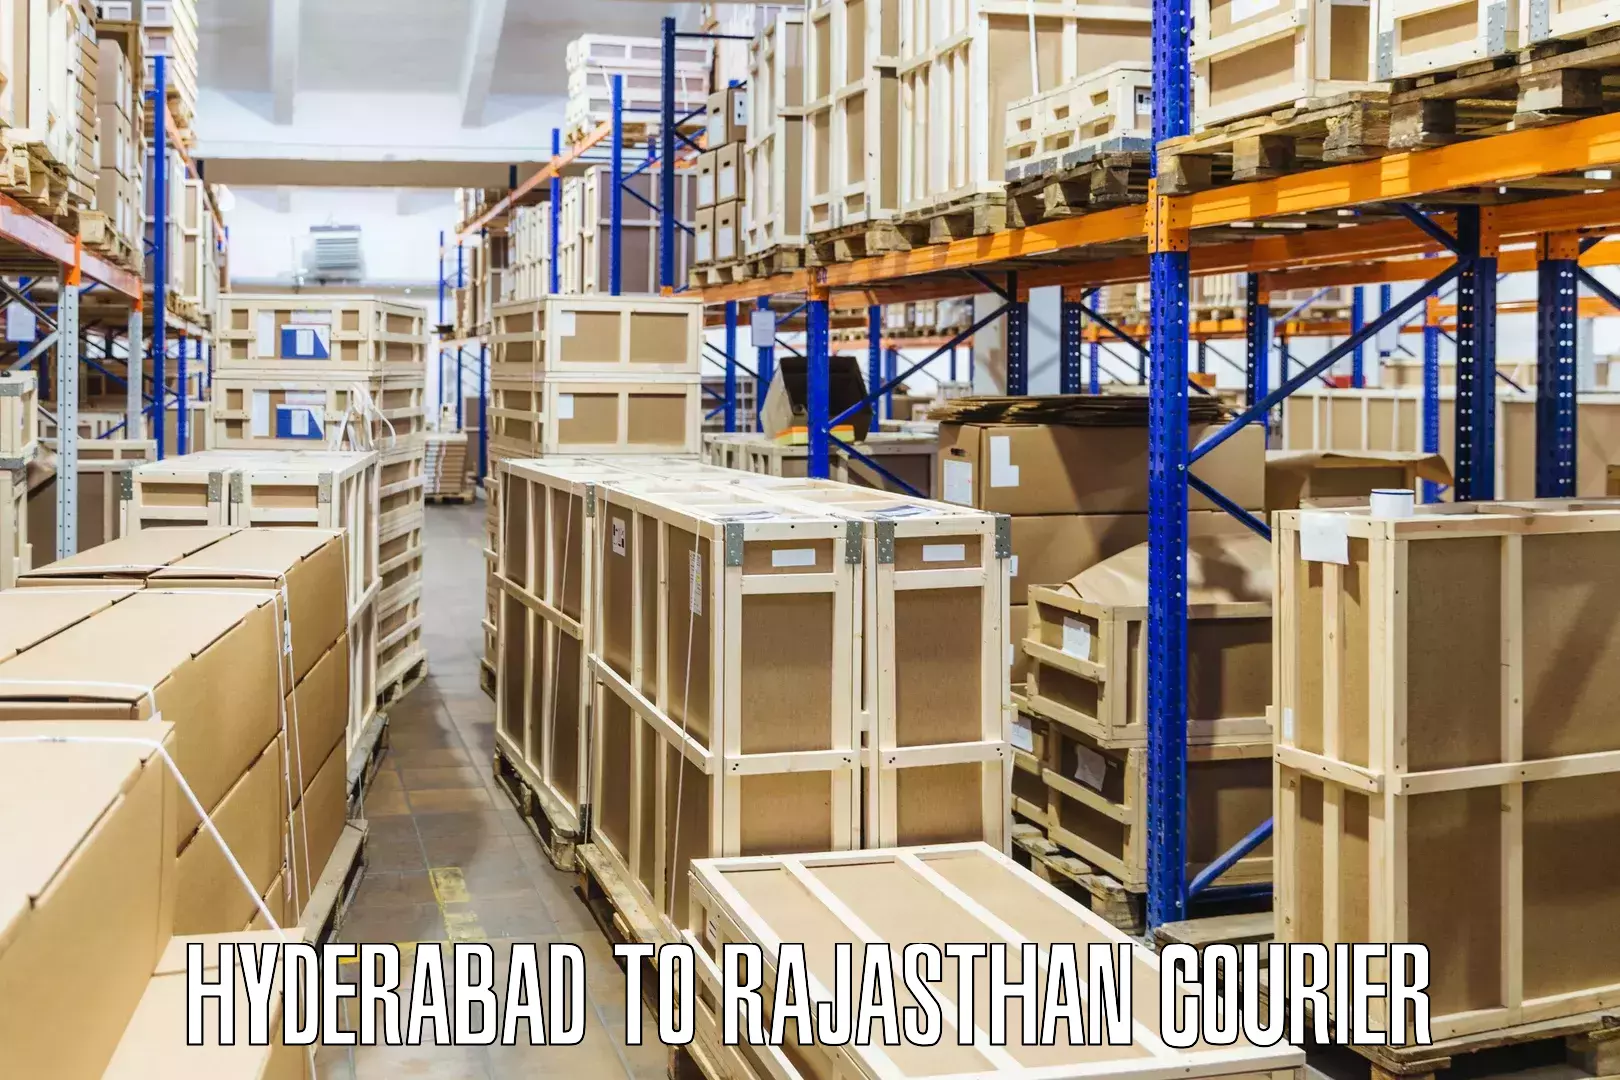 Package consolidation Hyderabad to Nainwa